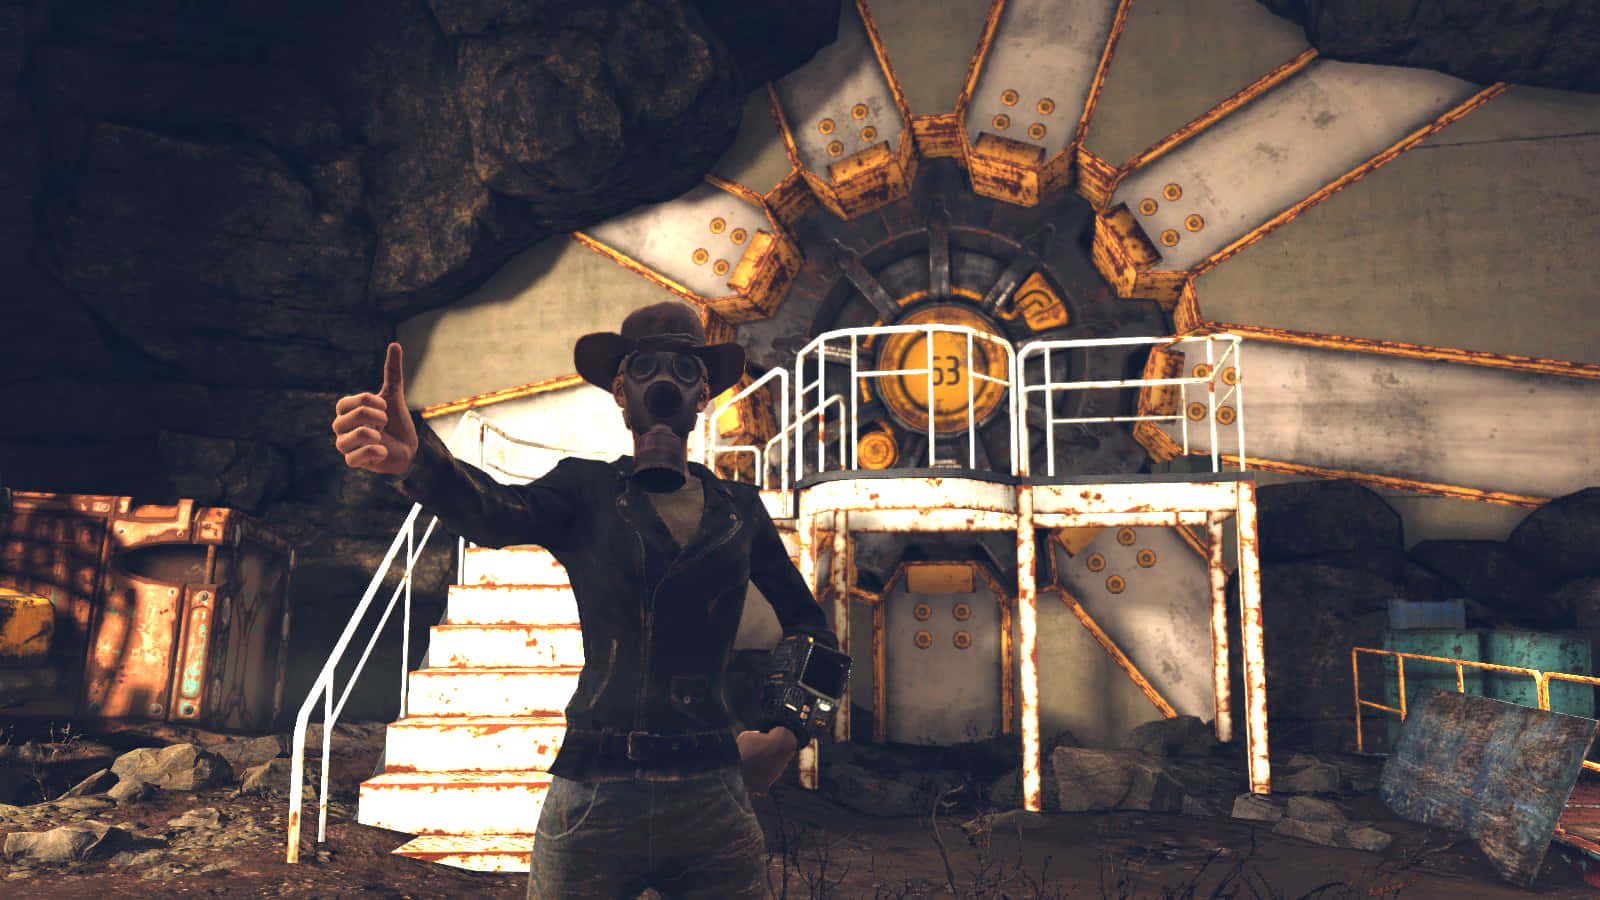 Lahermandad De Acero De Fallout - El Protector Vigilante Fondo de pantalla